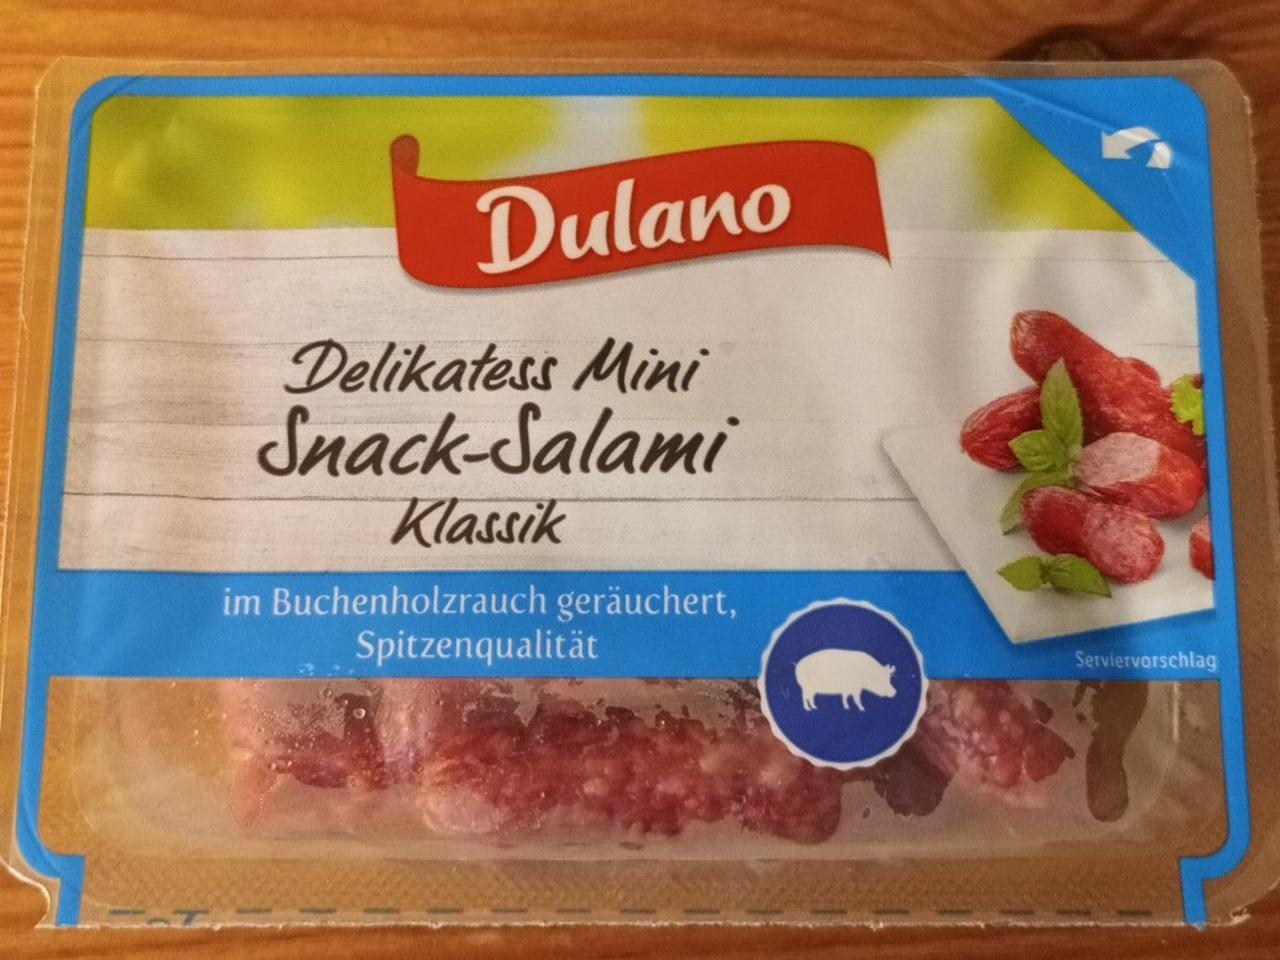 Fotografie - Delikatess Mini Snack-Salami Klassik Dulano